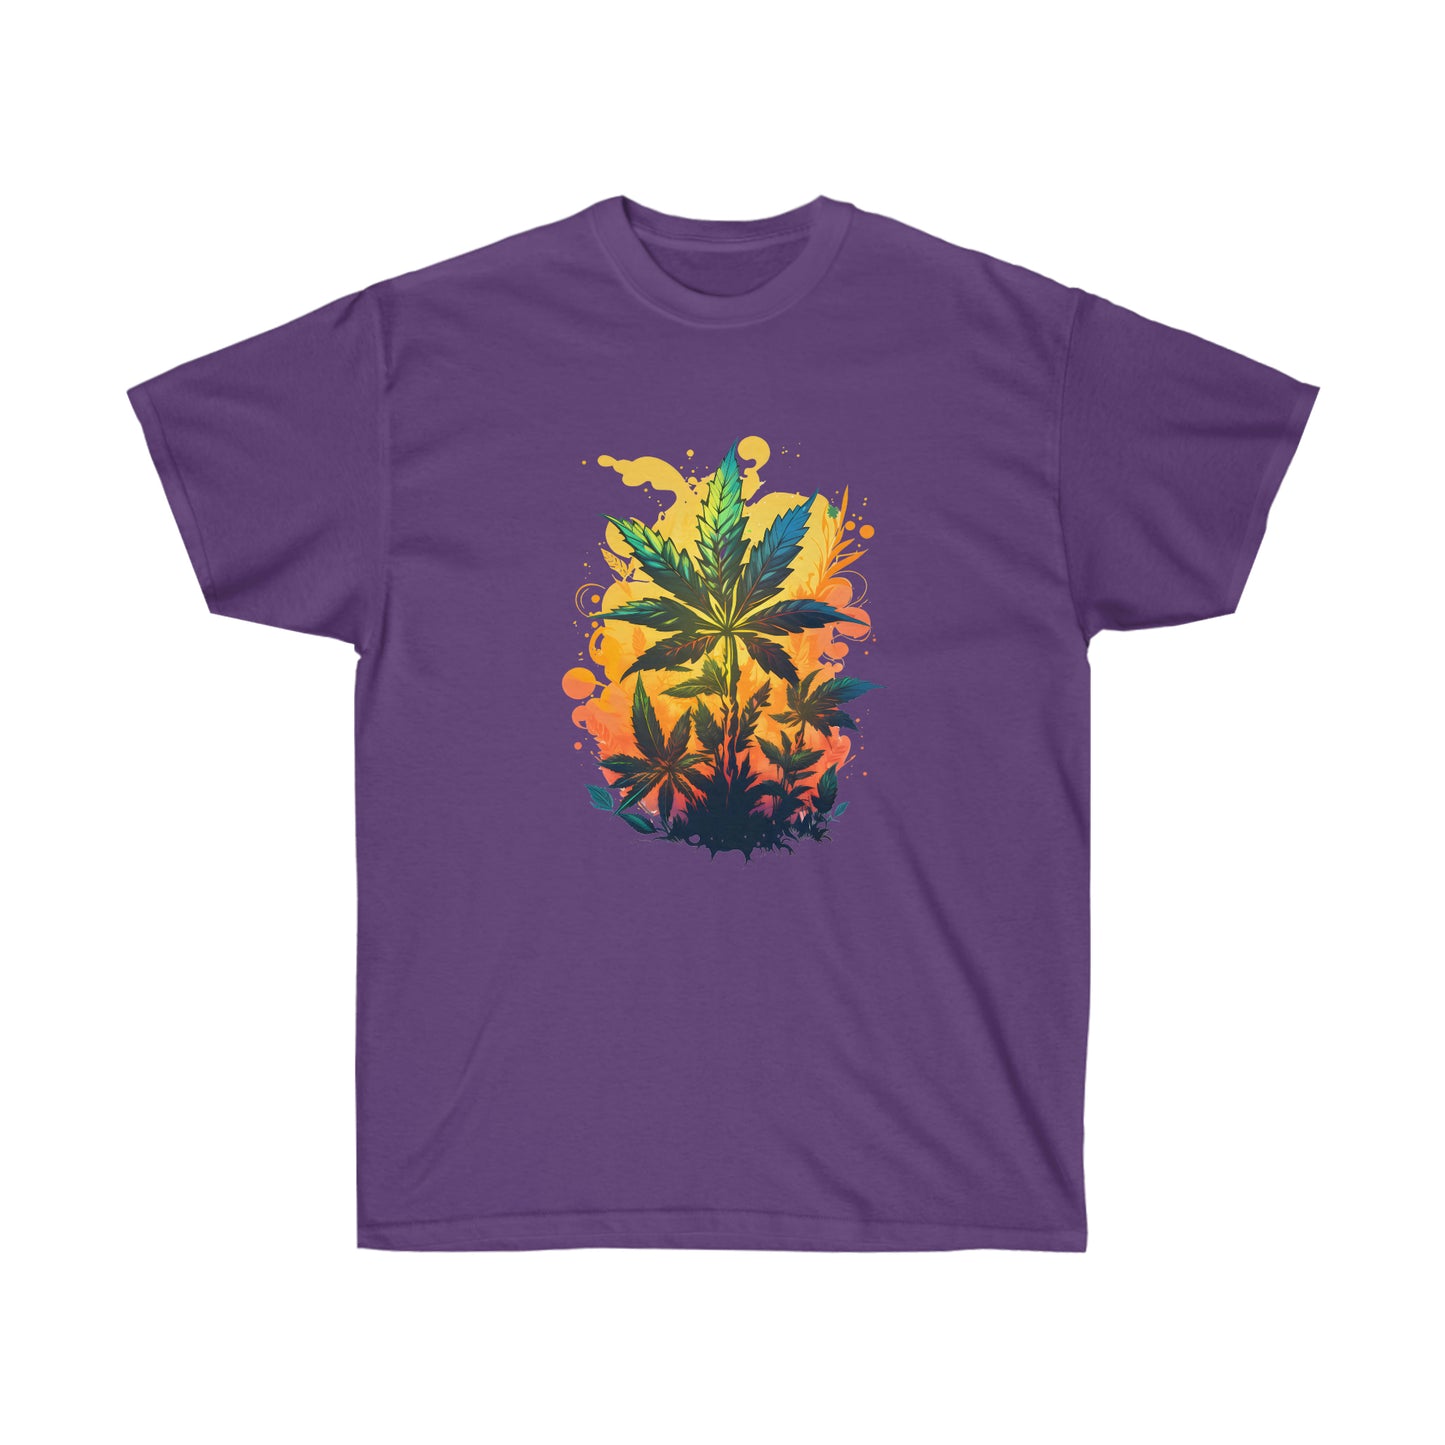 A purple warm paradise cannabis t-shirt